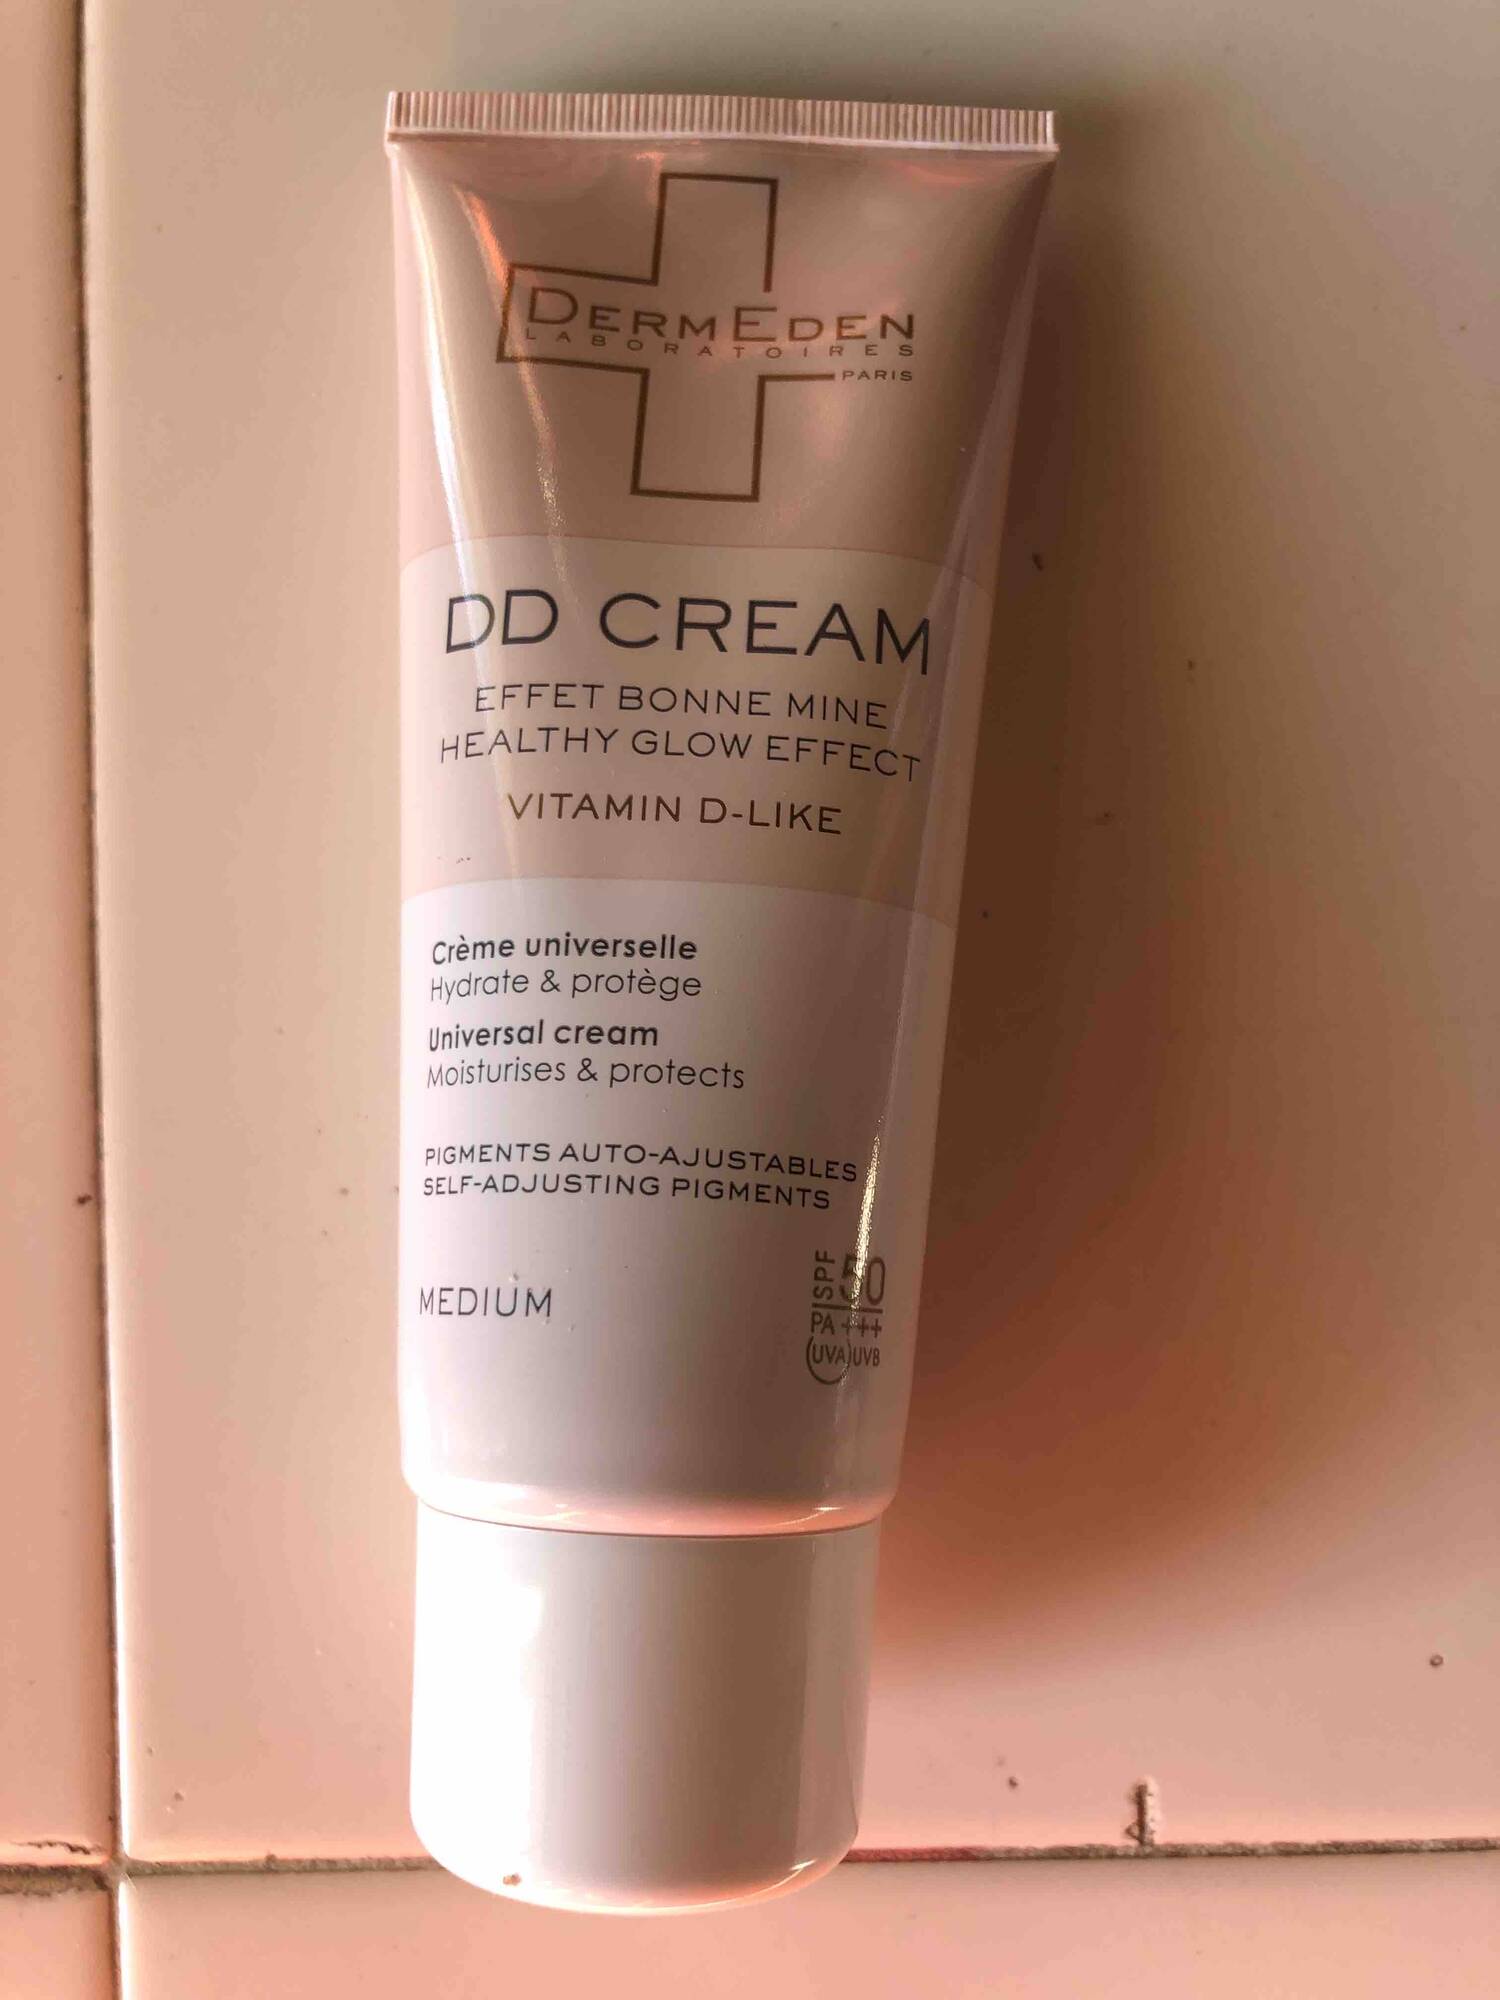 DERMEDEN - Crème universelle SPF50 - DD cream